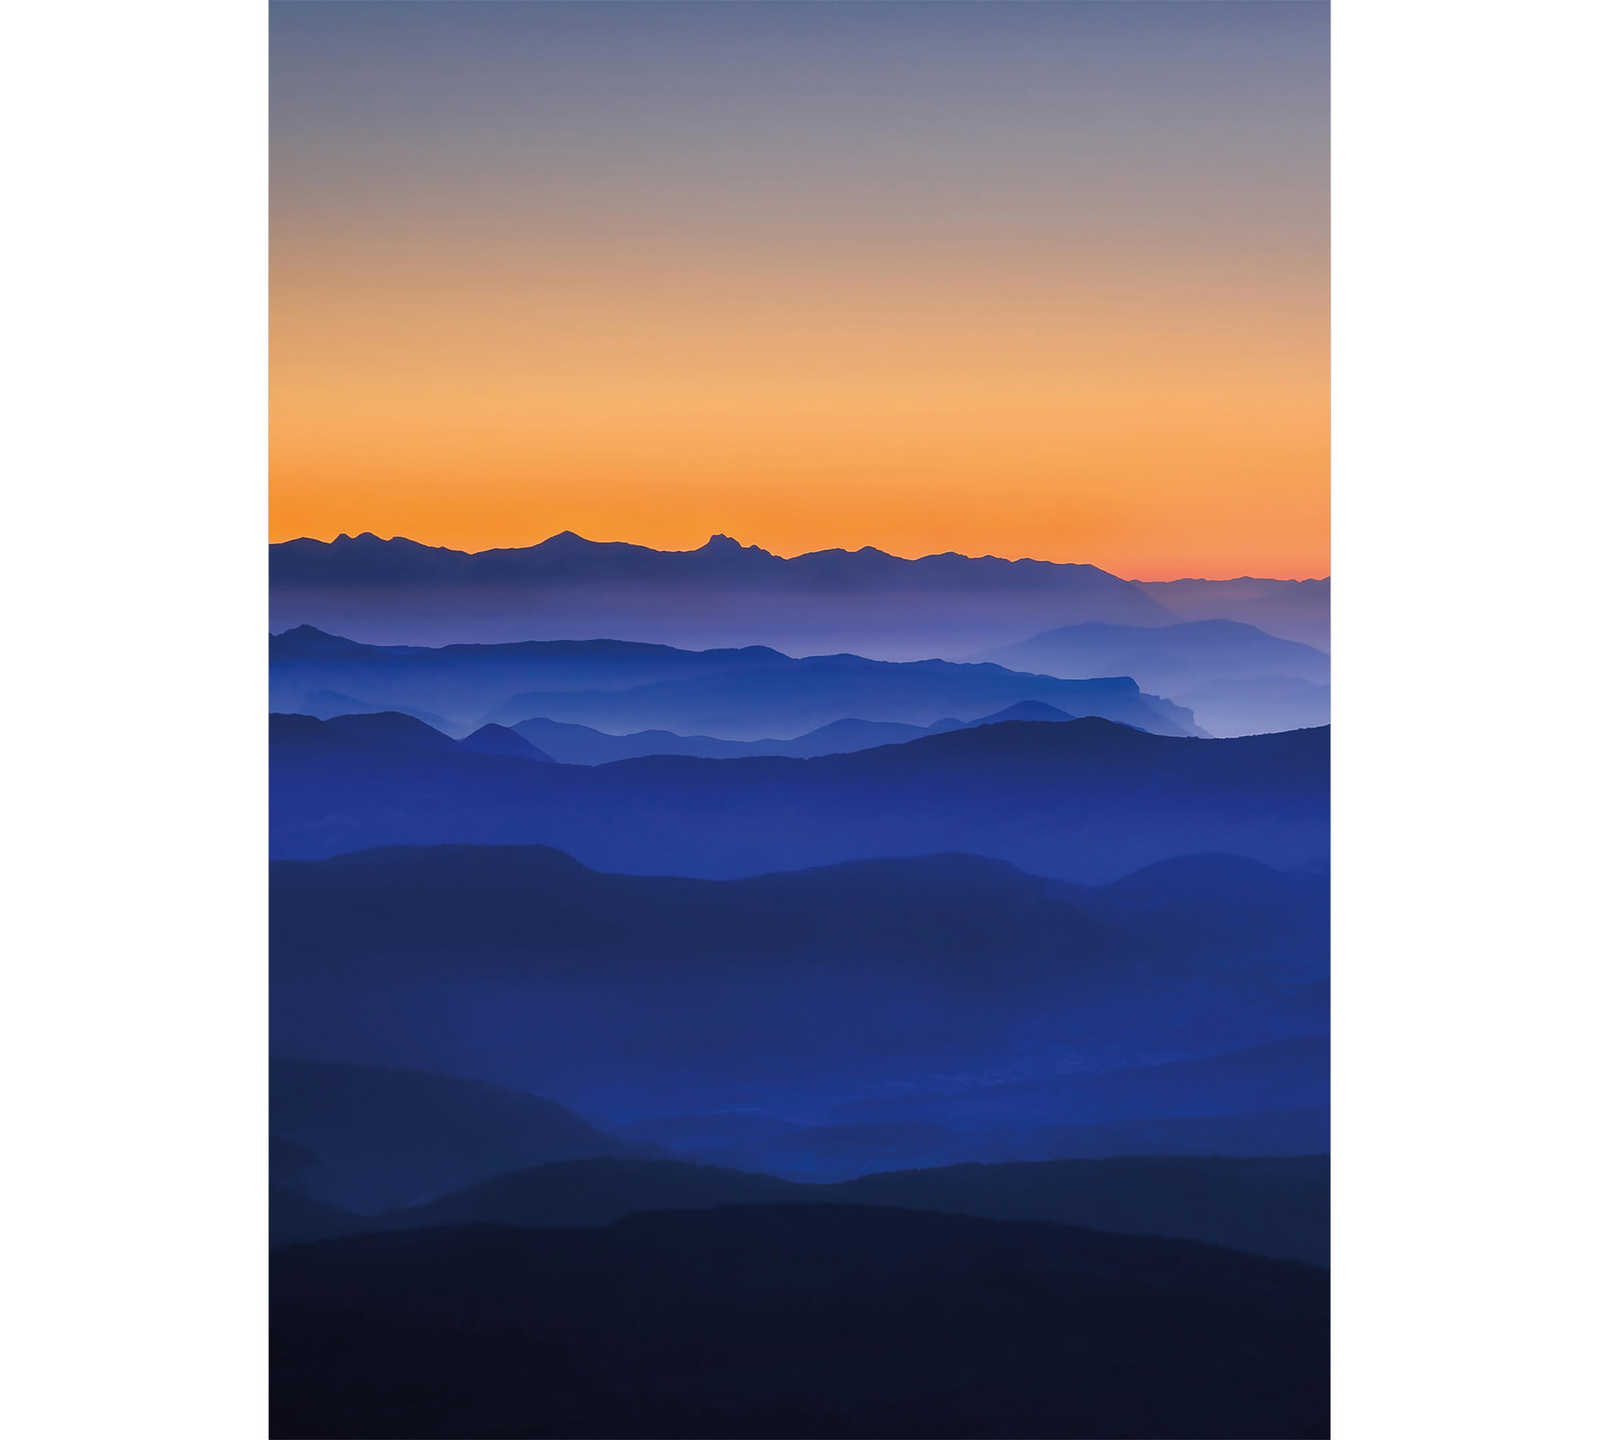 Mountains at Dusk Wallpaper - Blauw, Oranje, Geel
